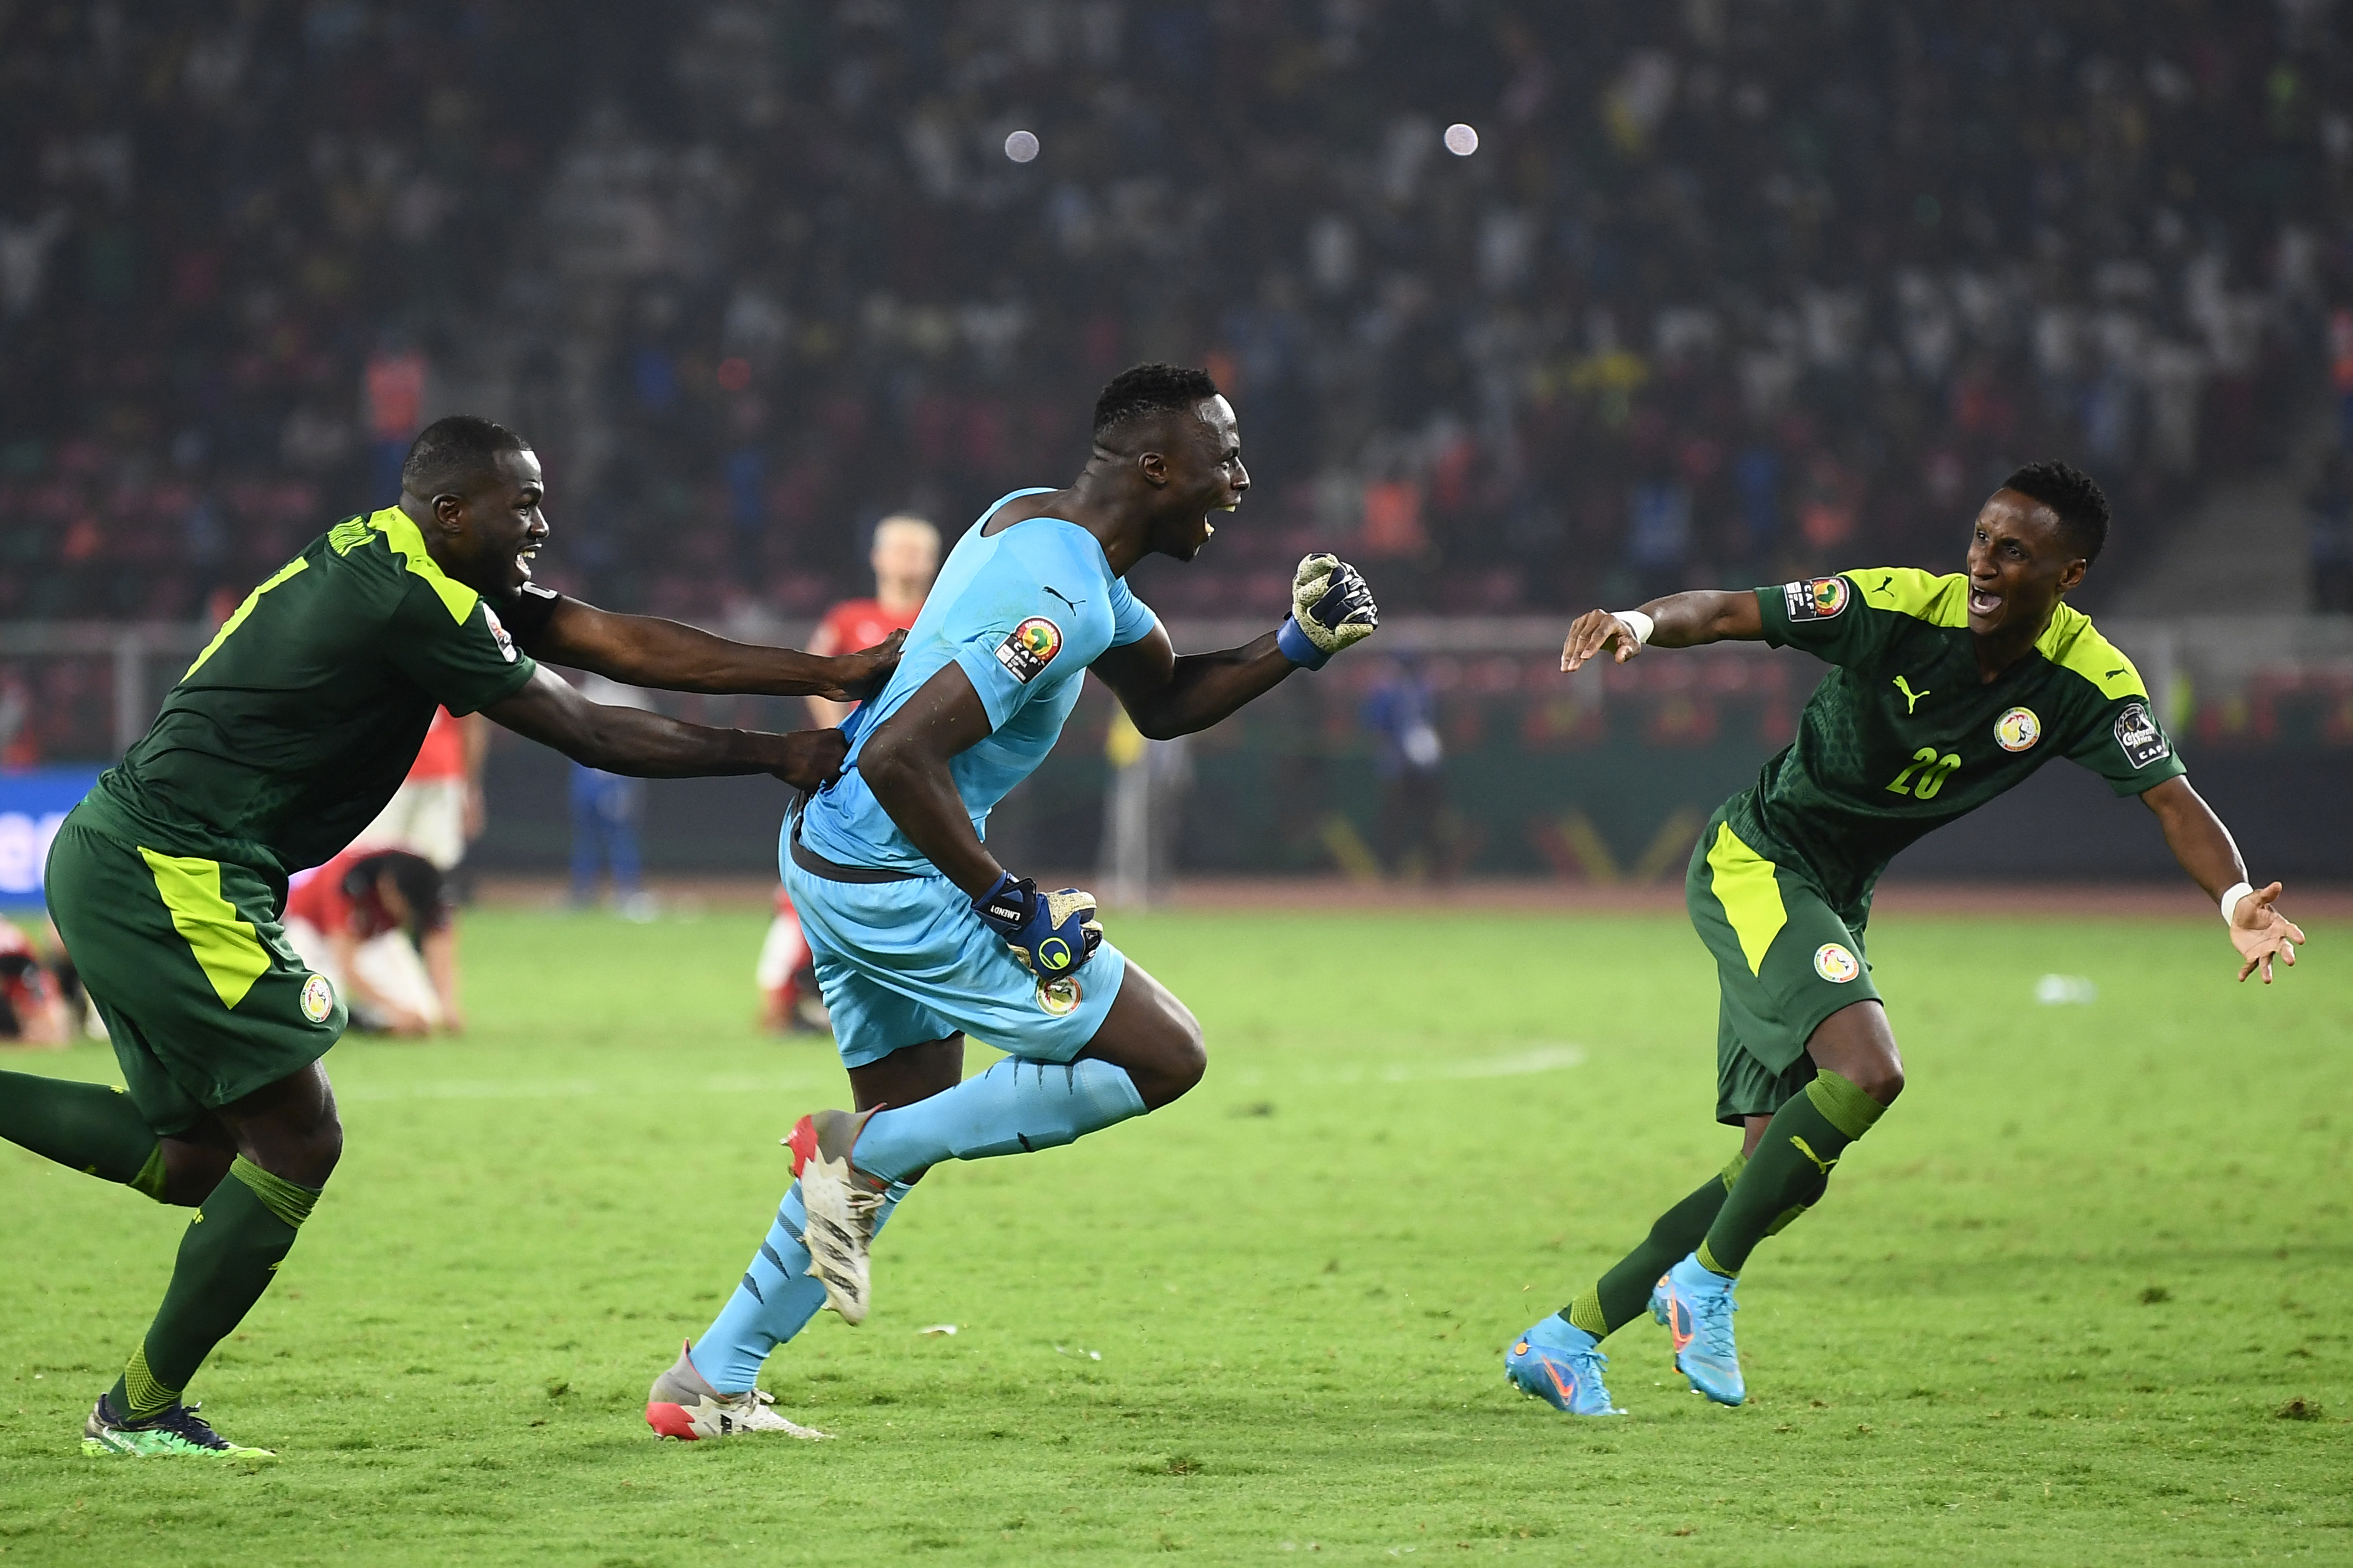 Seleção de Futebol do Senegal - Placar - O futebol sem barreiras para você